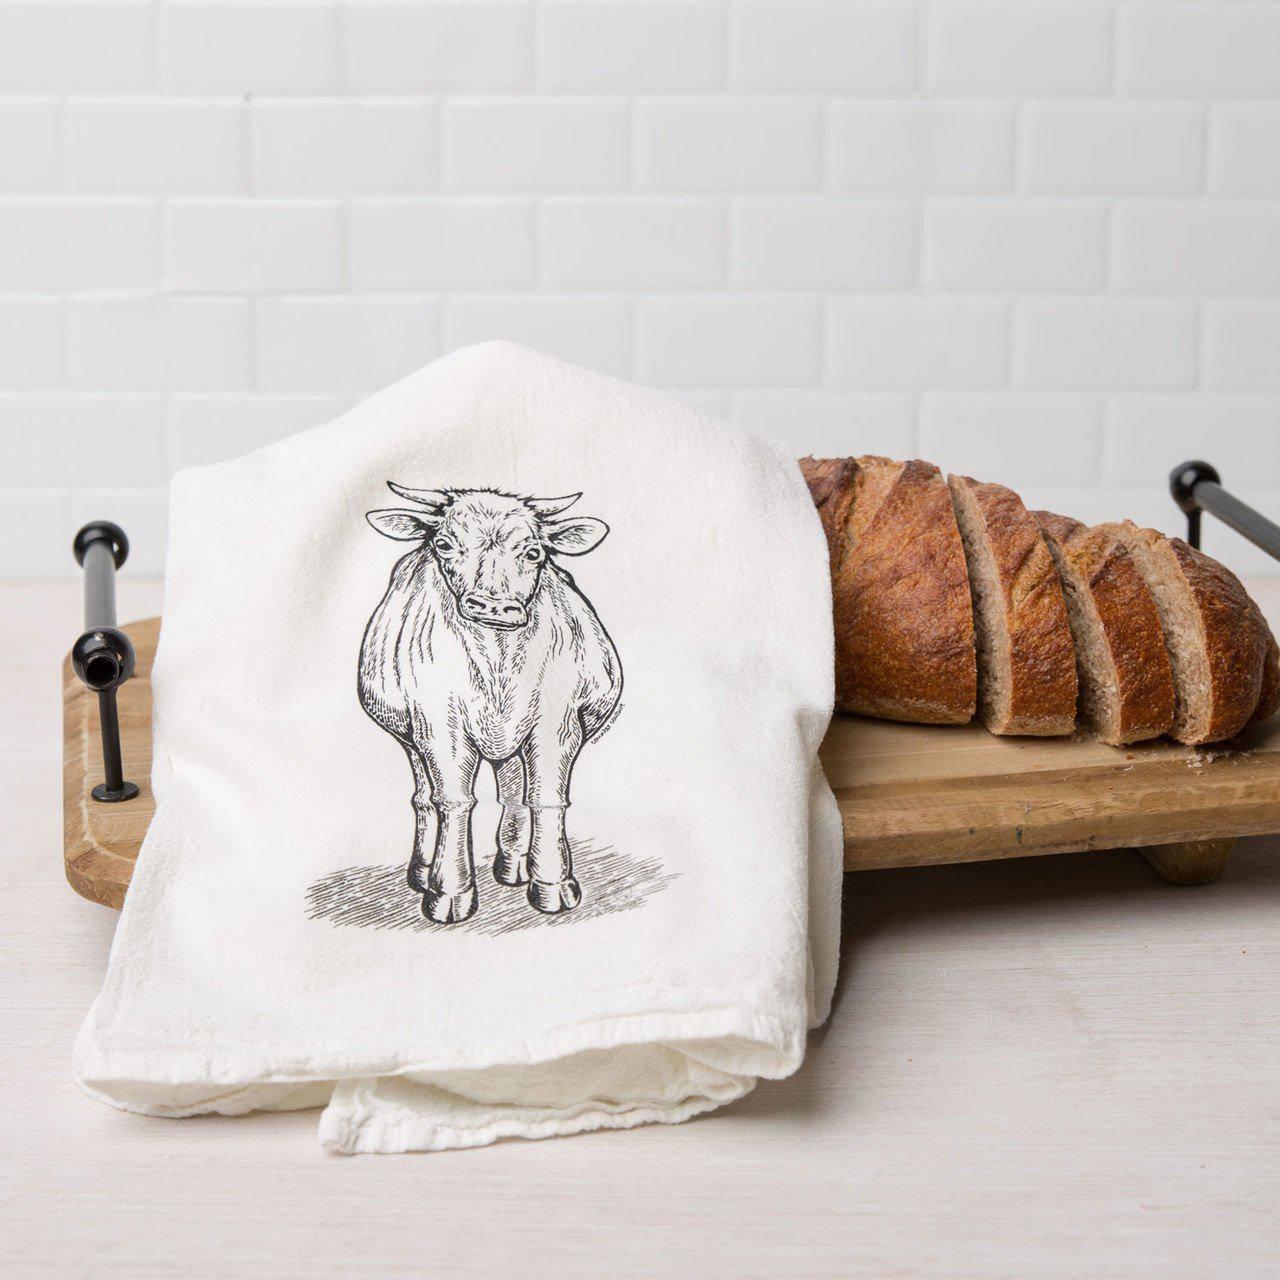 Cow Flour Sack Towel - Cottagcore Kitchen - Dish Towel -Counter Couture